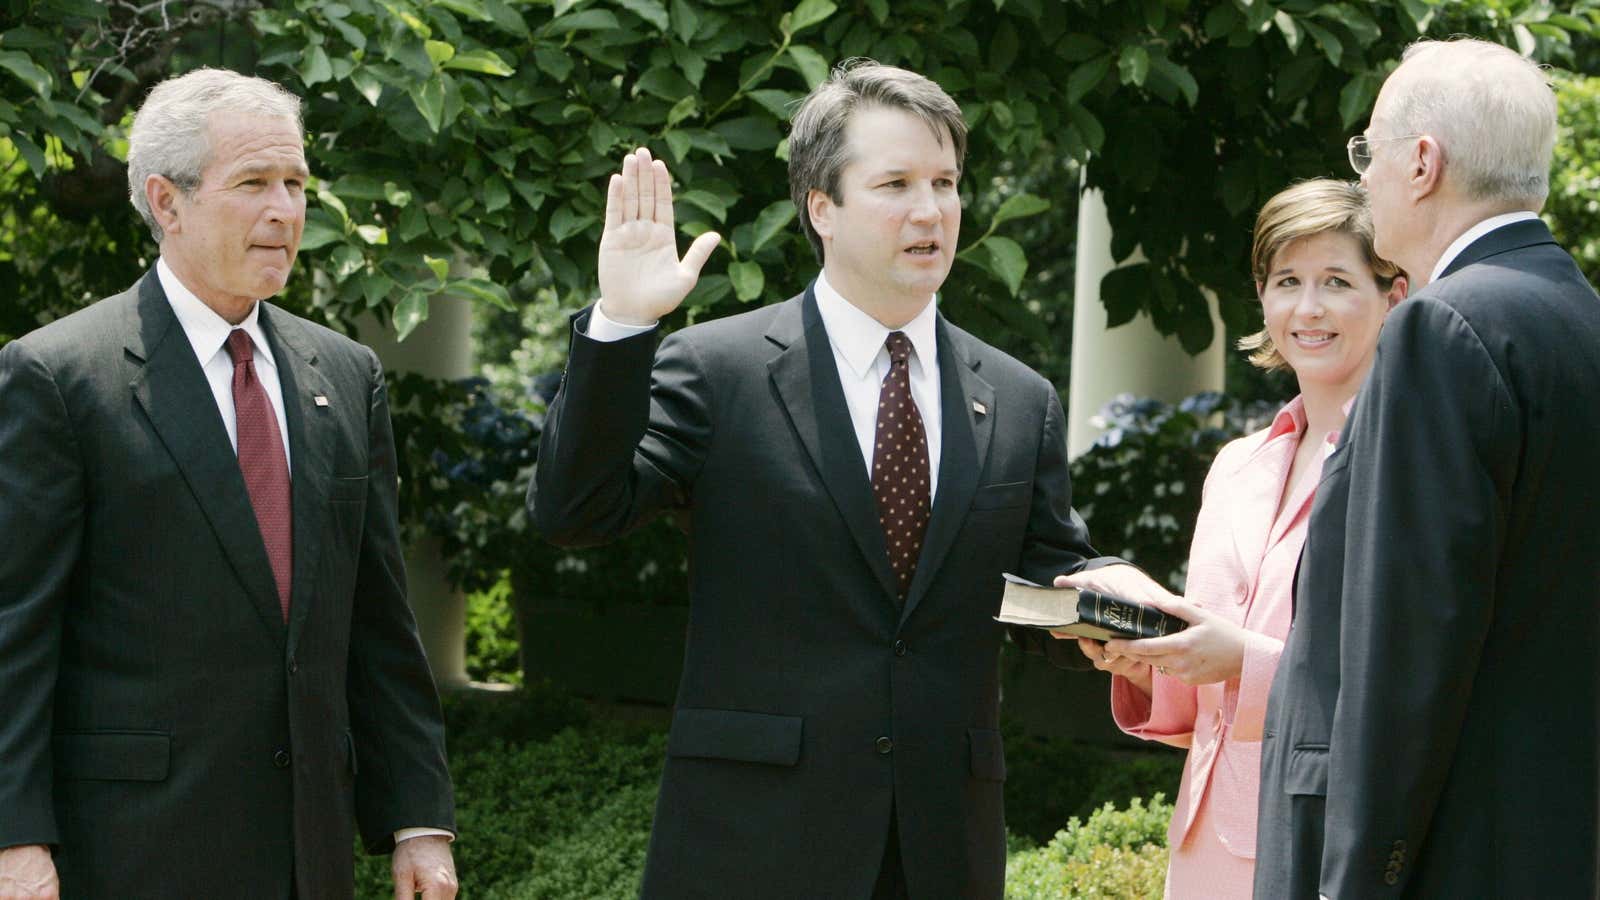 Kavanaugh is sworn in in 2006 as George W Bush watches.